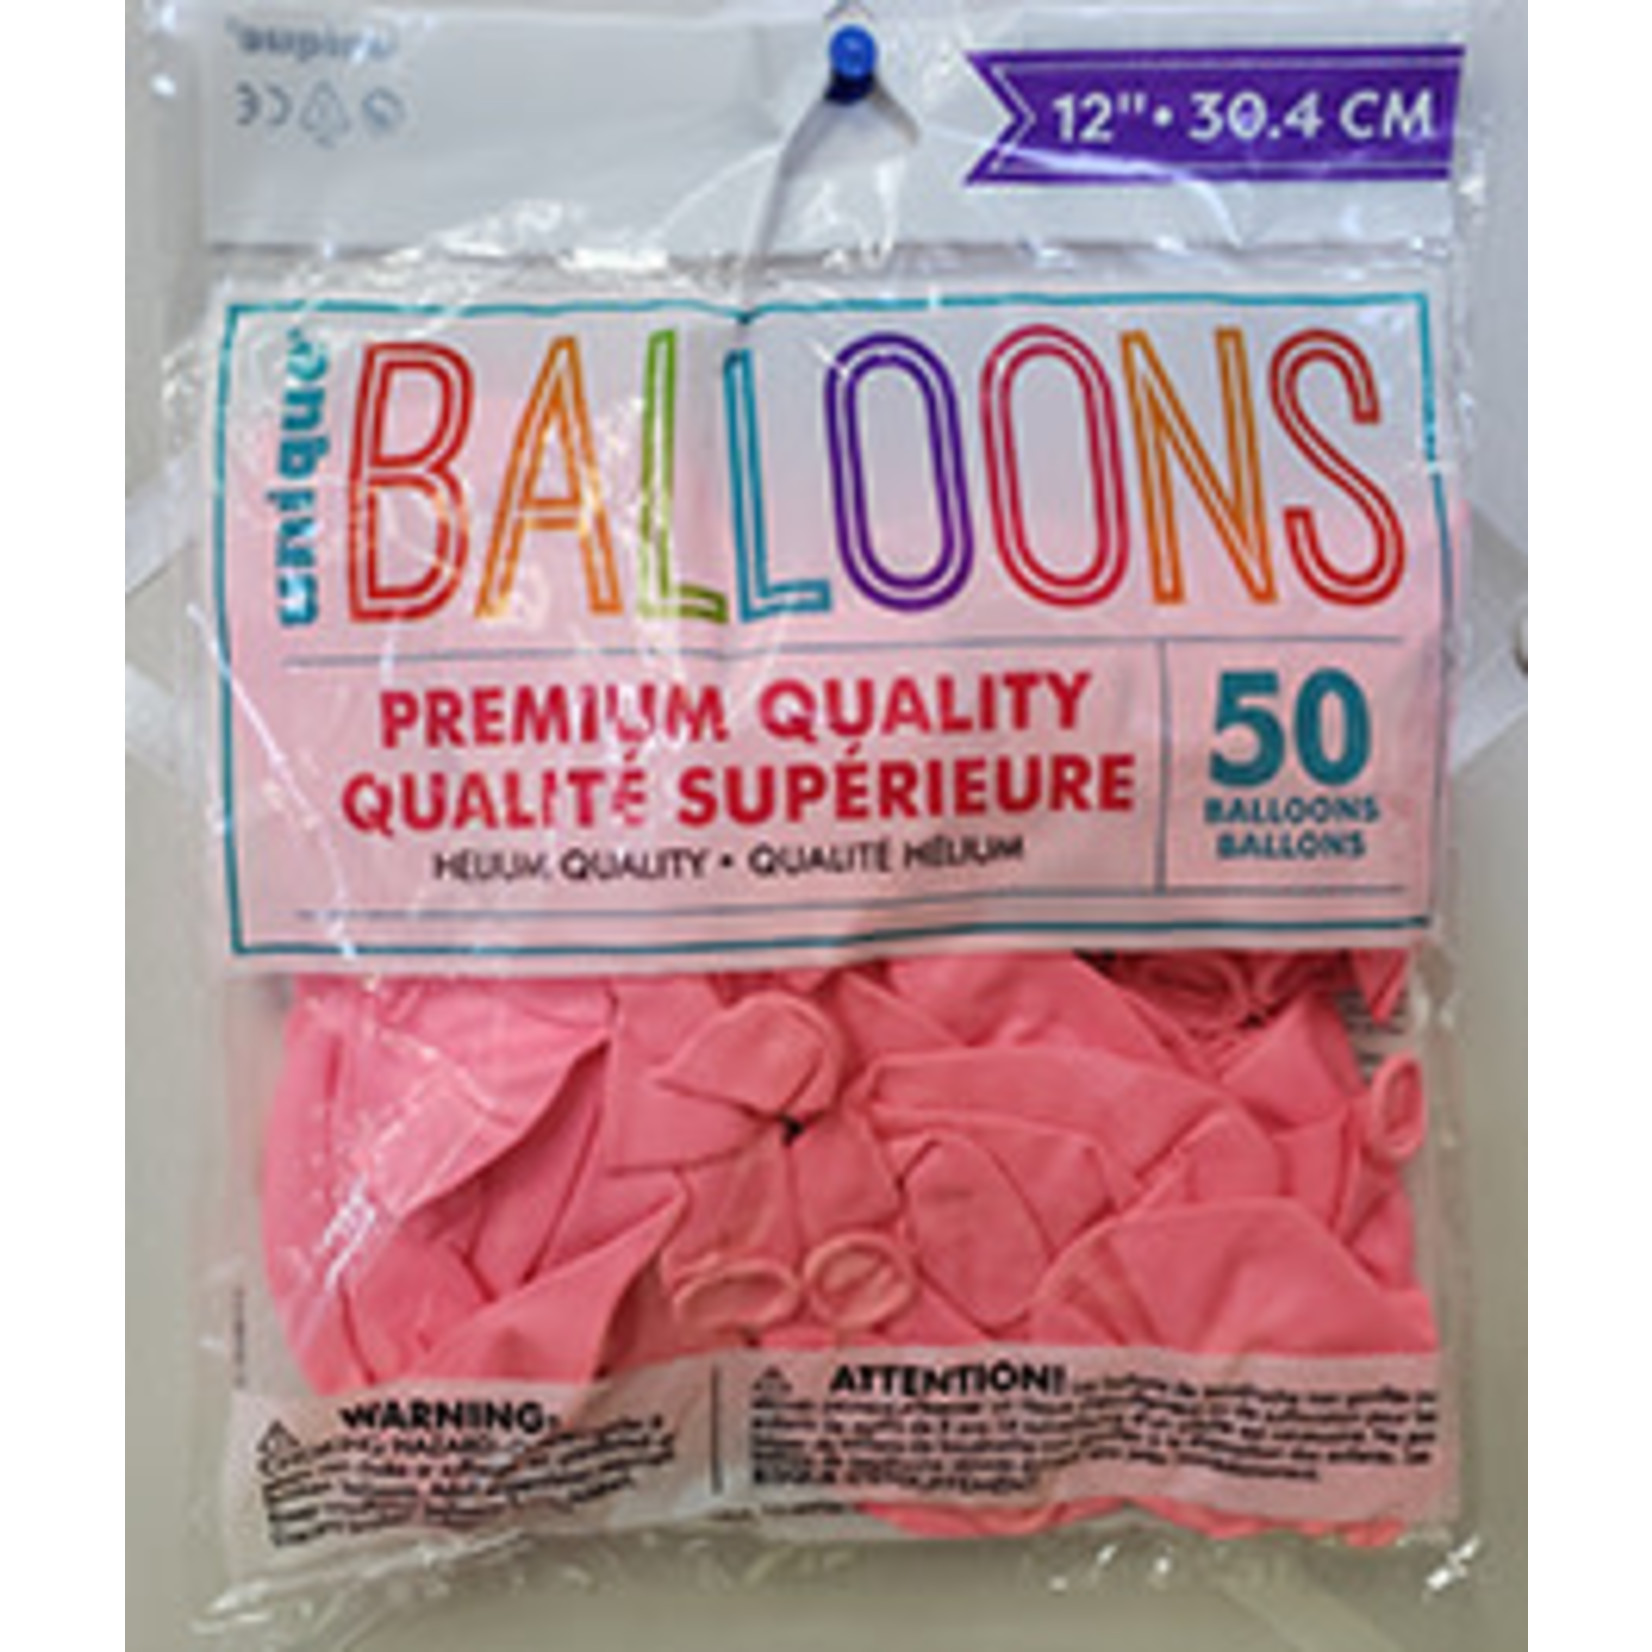 unique 12" Powder Pink Premium Balloons - 50ct.